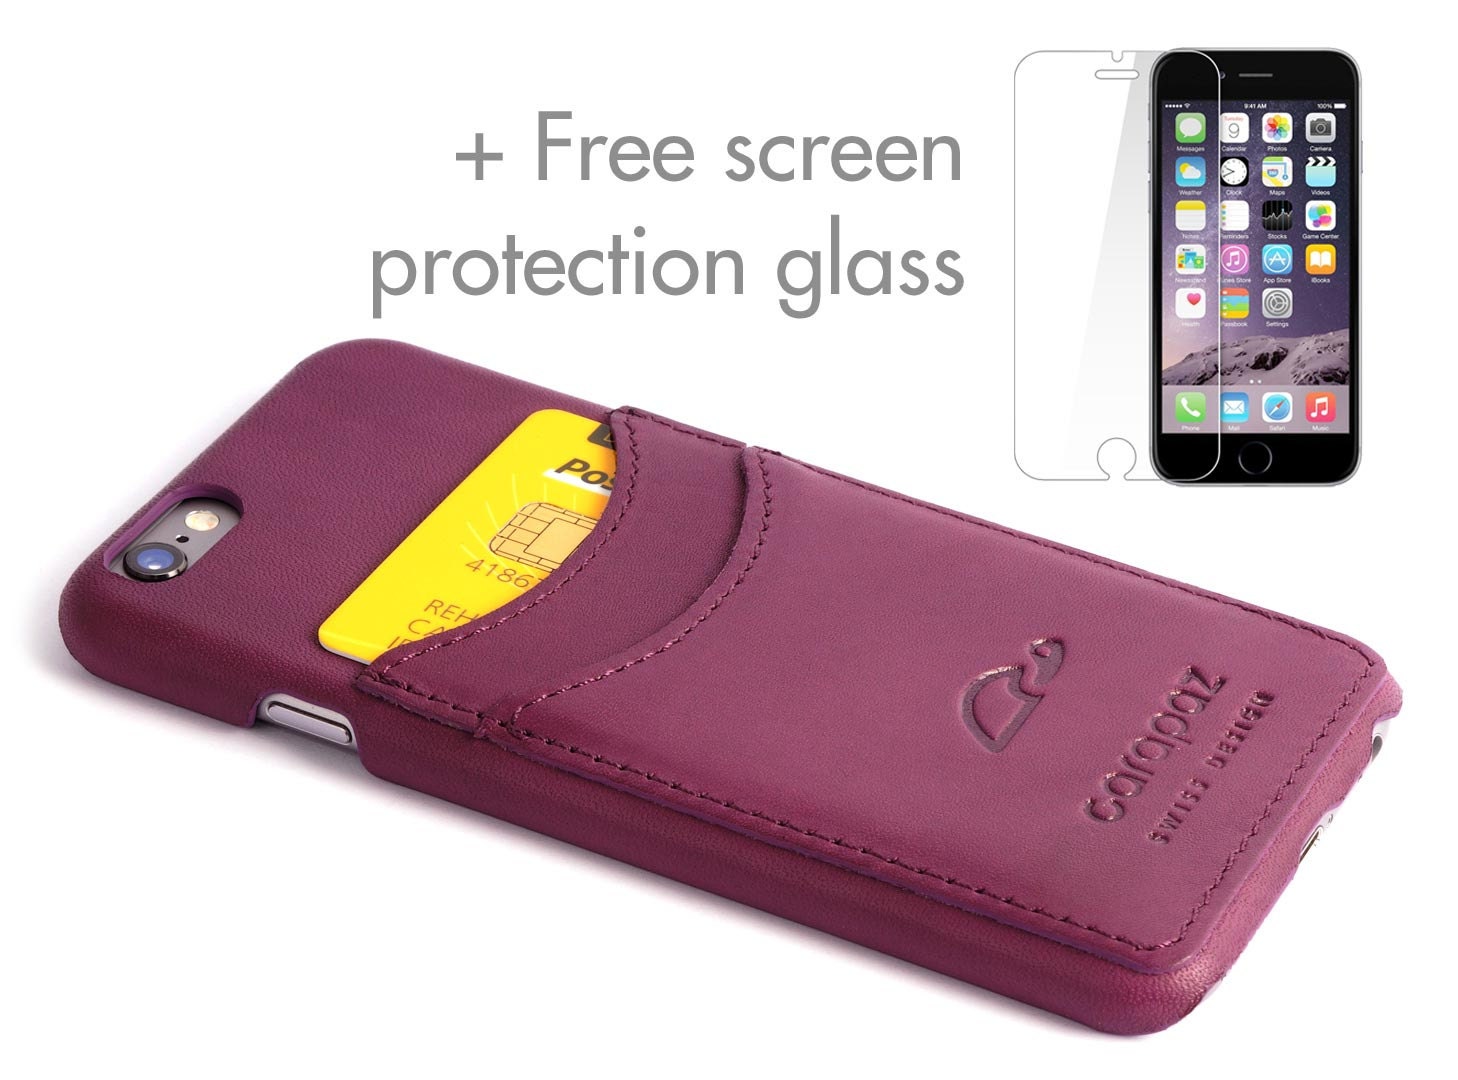 Arbejdsløs kontoførende kondensator Iphone 6 Leather Case Comes With Protection Glass Iphone 6 - Etsy